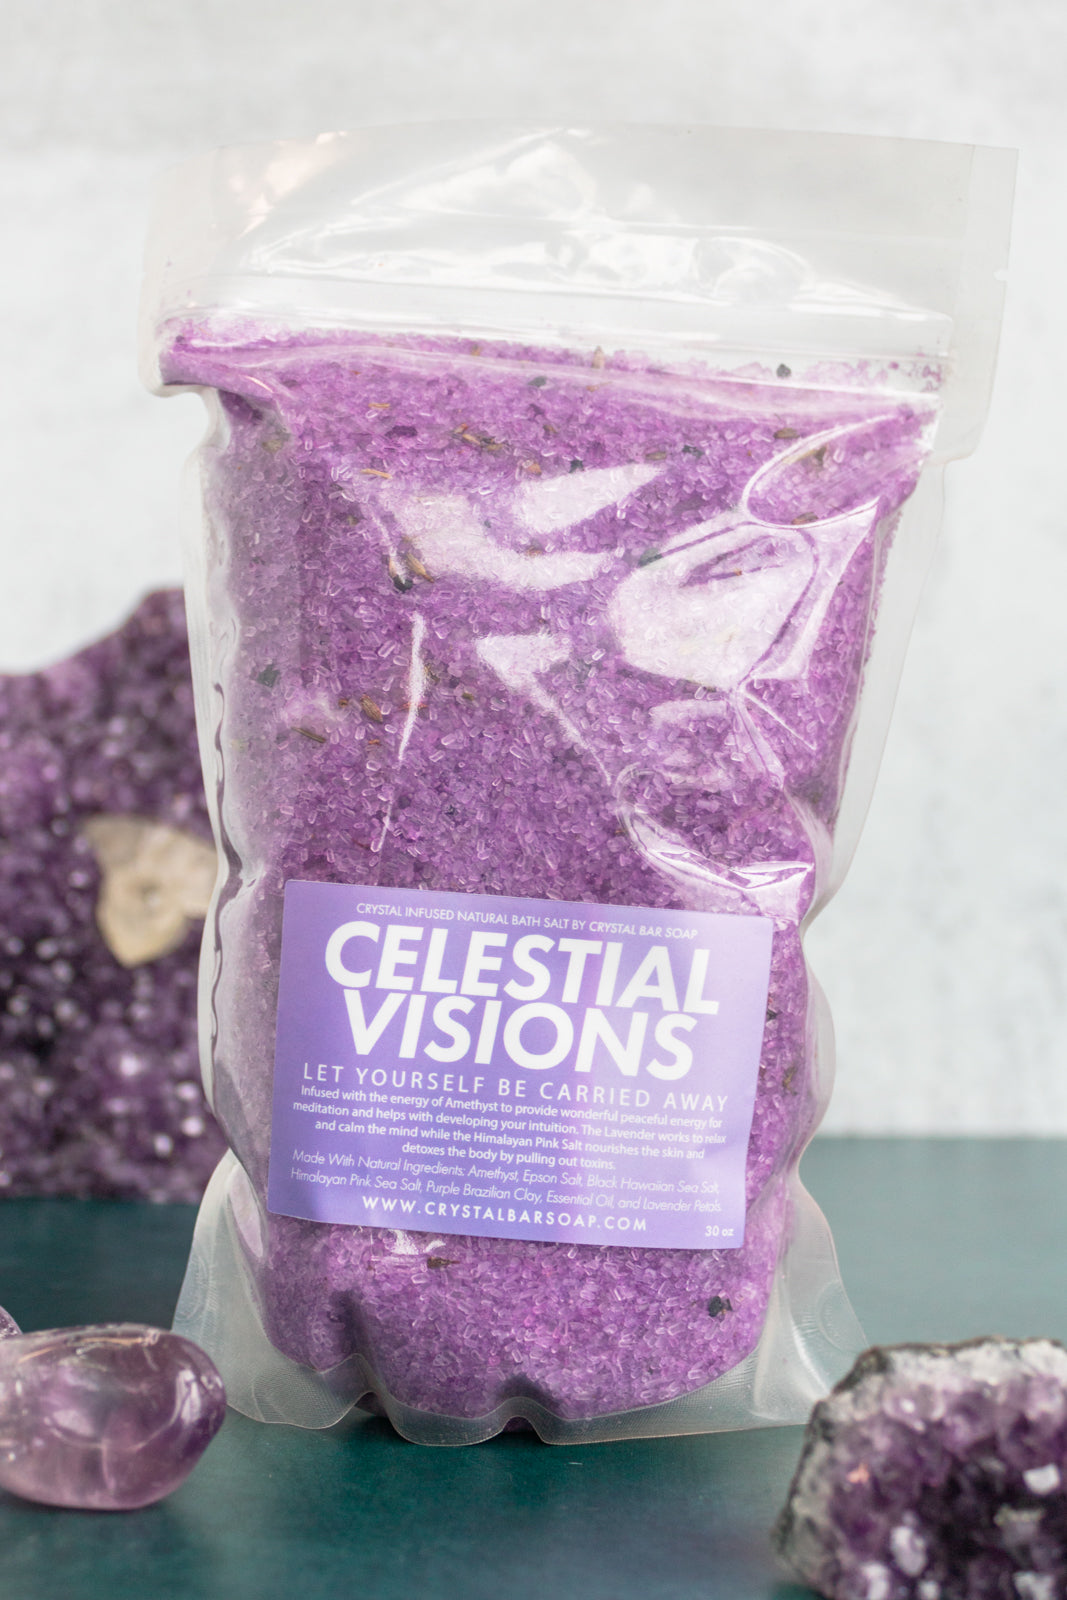 Celestial Vision Crystal Bath Salt